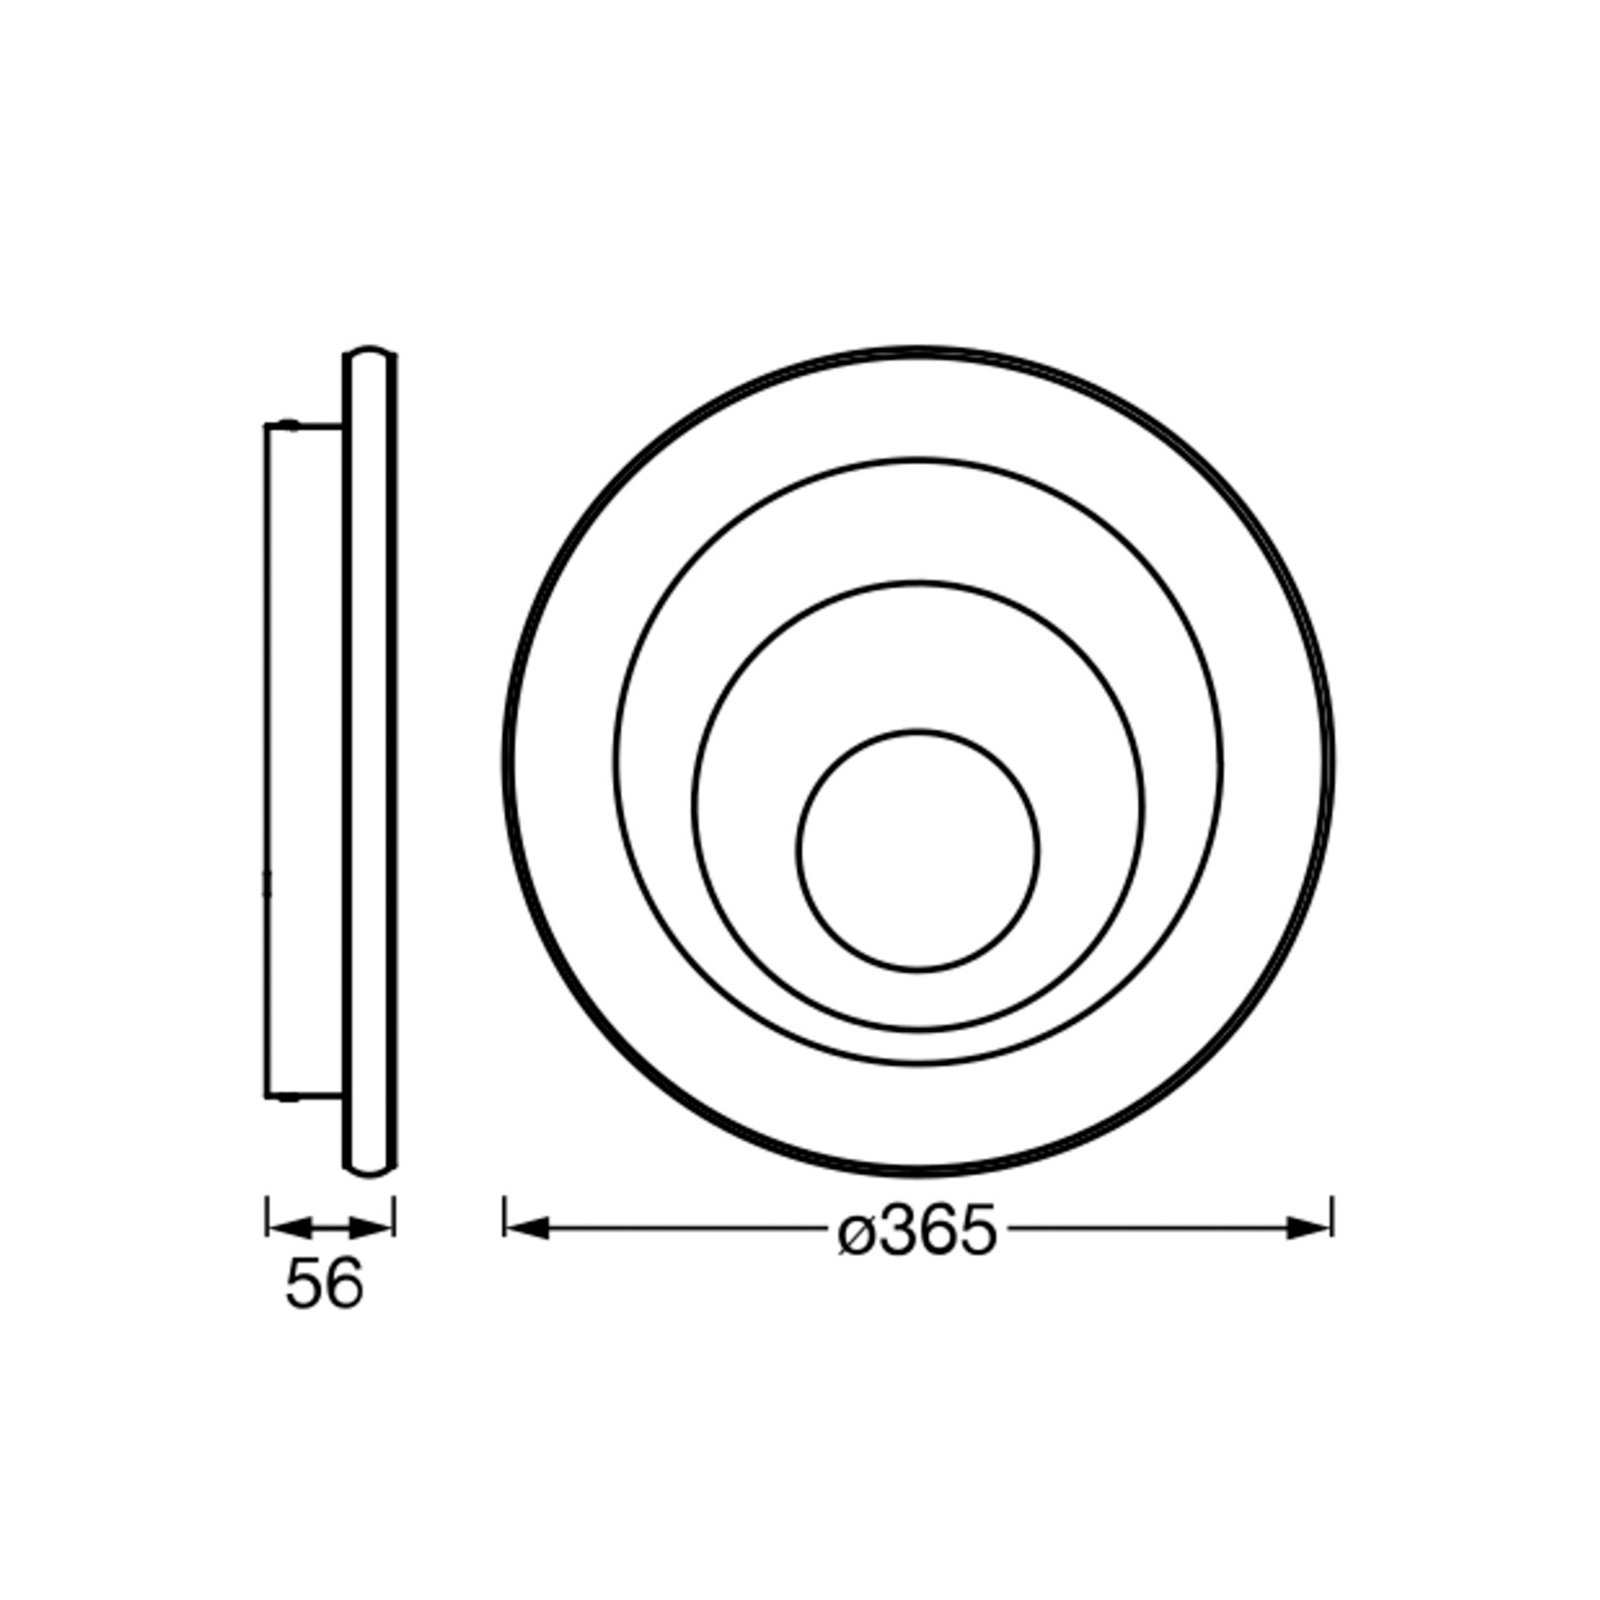 LEDVANCE Orbis Spiral Round Deckenleuchte Ø36,5cm